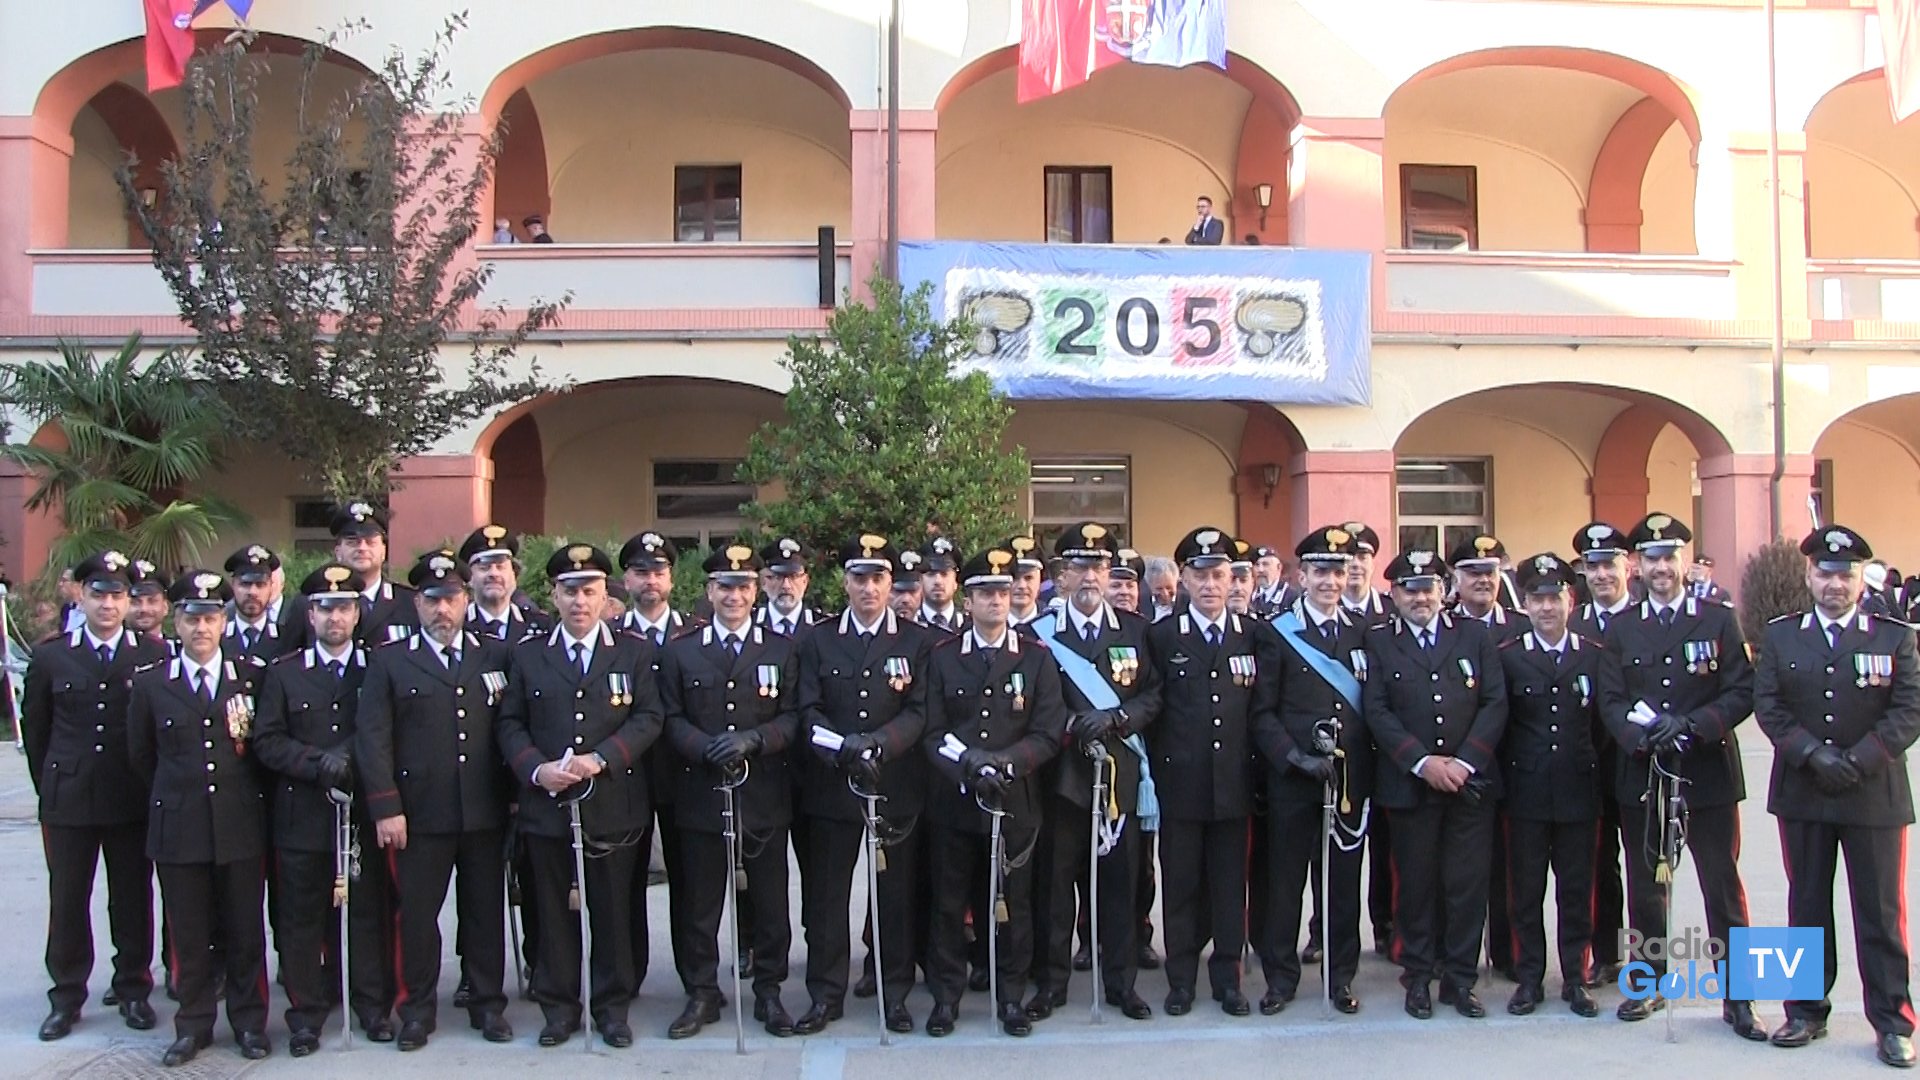 L’Arma festeggia 205 anni e premia i Carabinieri della provincia